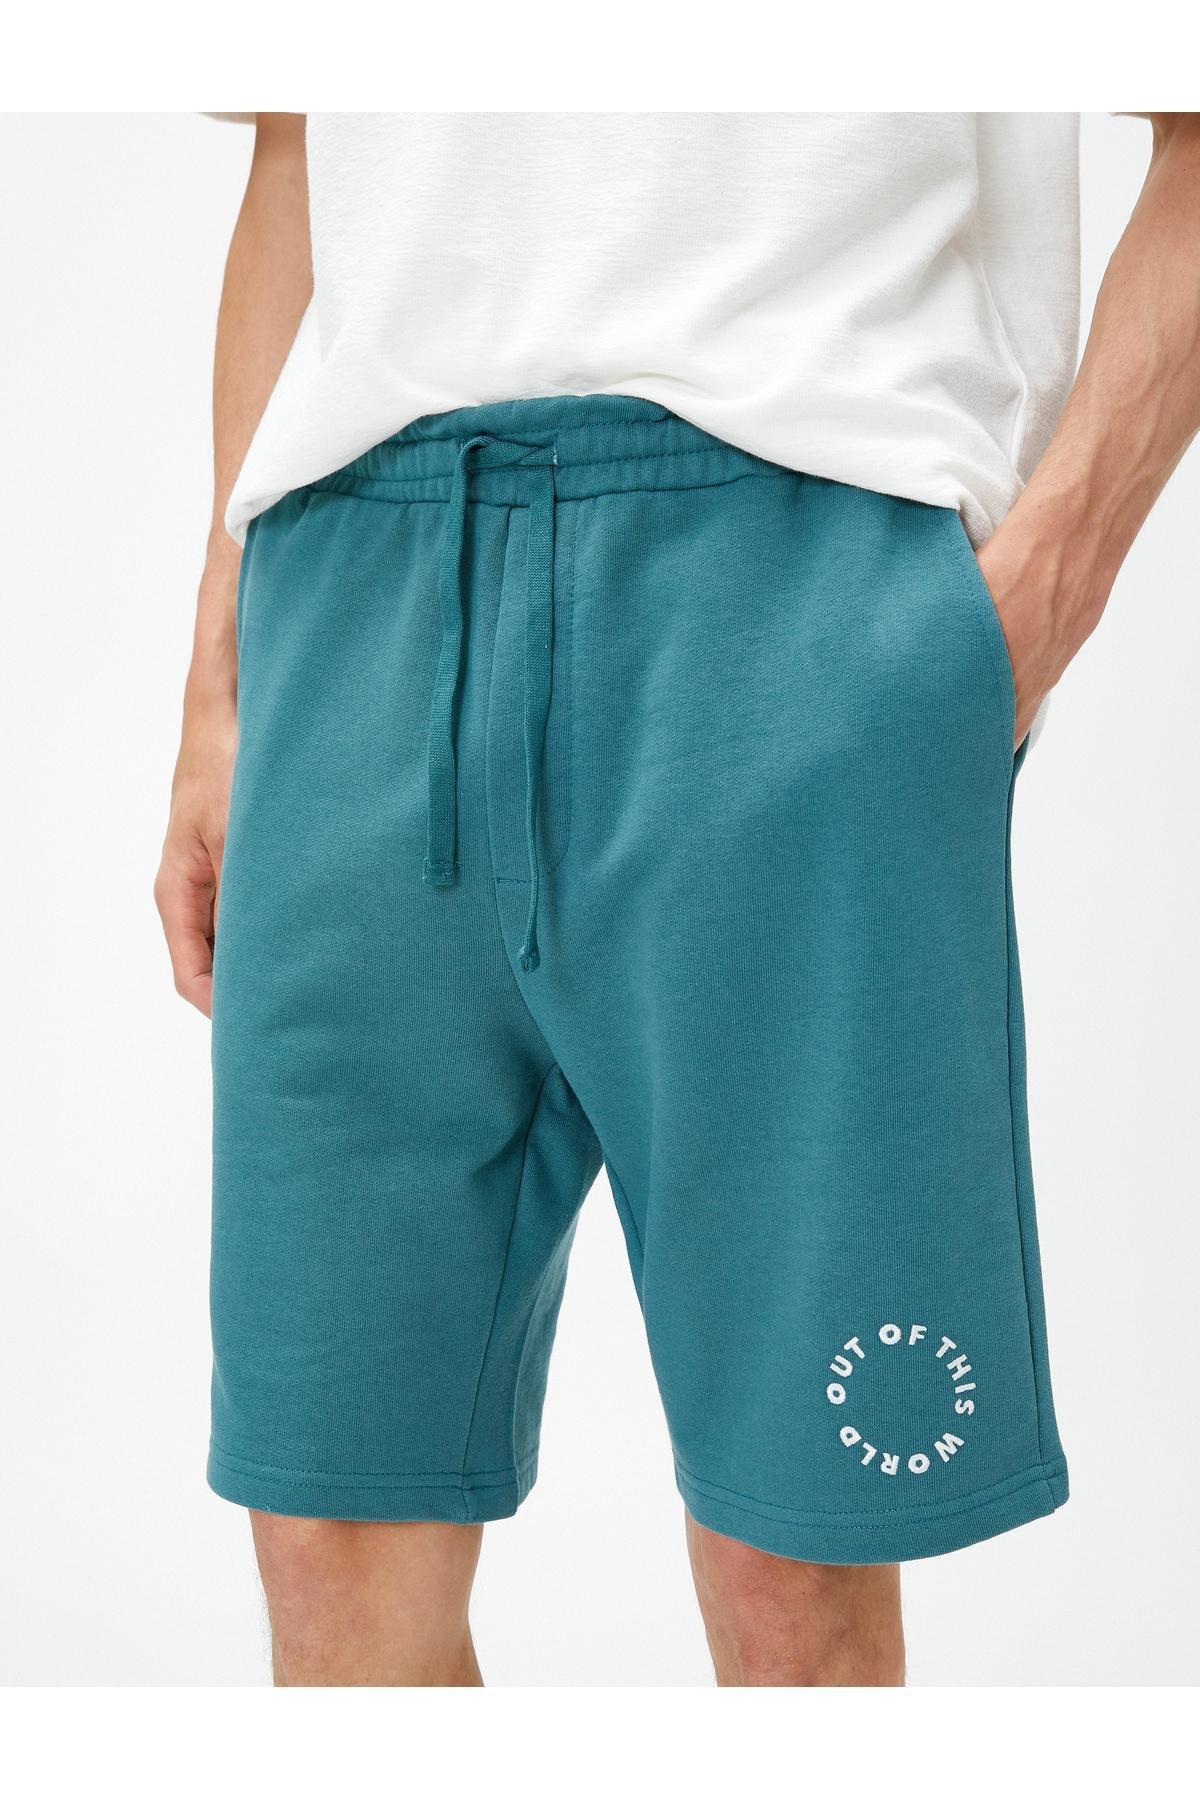 Koton - Green Printed Detailed Shorts